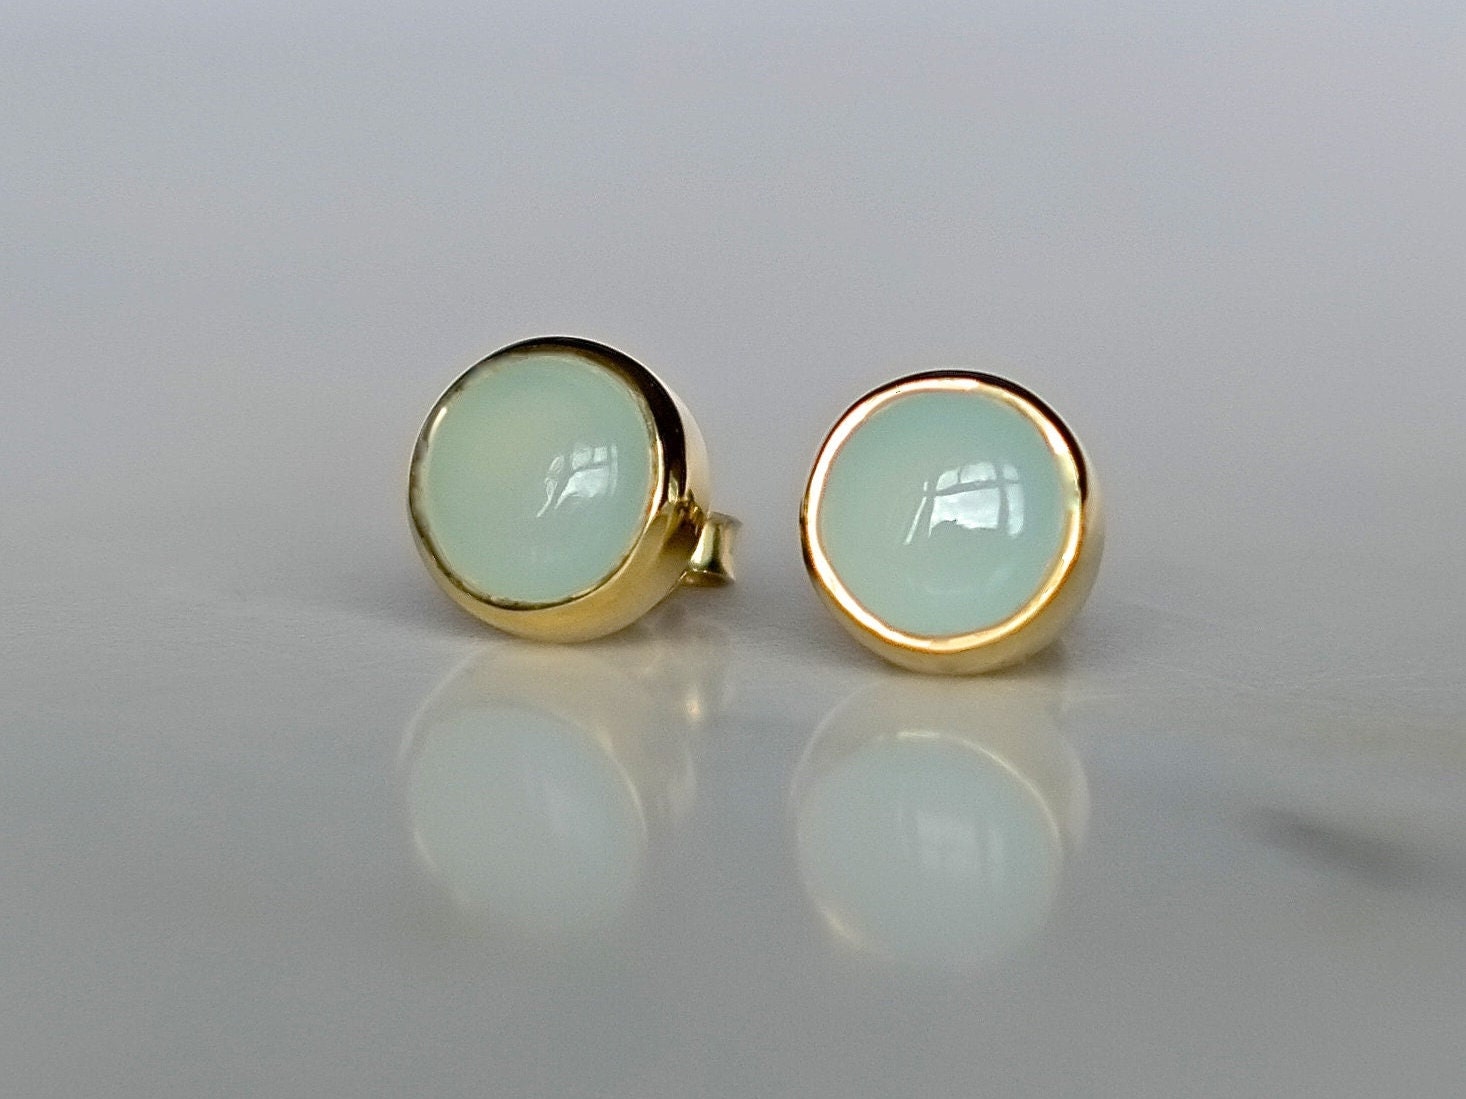 Real Birthstone Stud Earrings - Gold Vermeile Or Sterling Silver